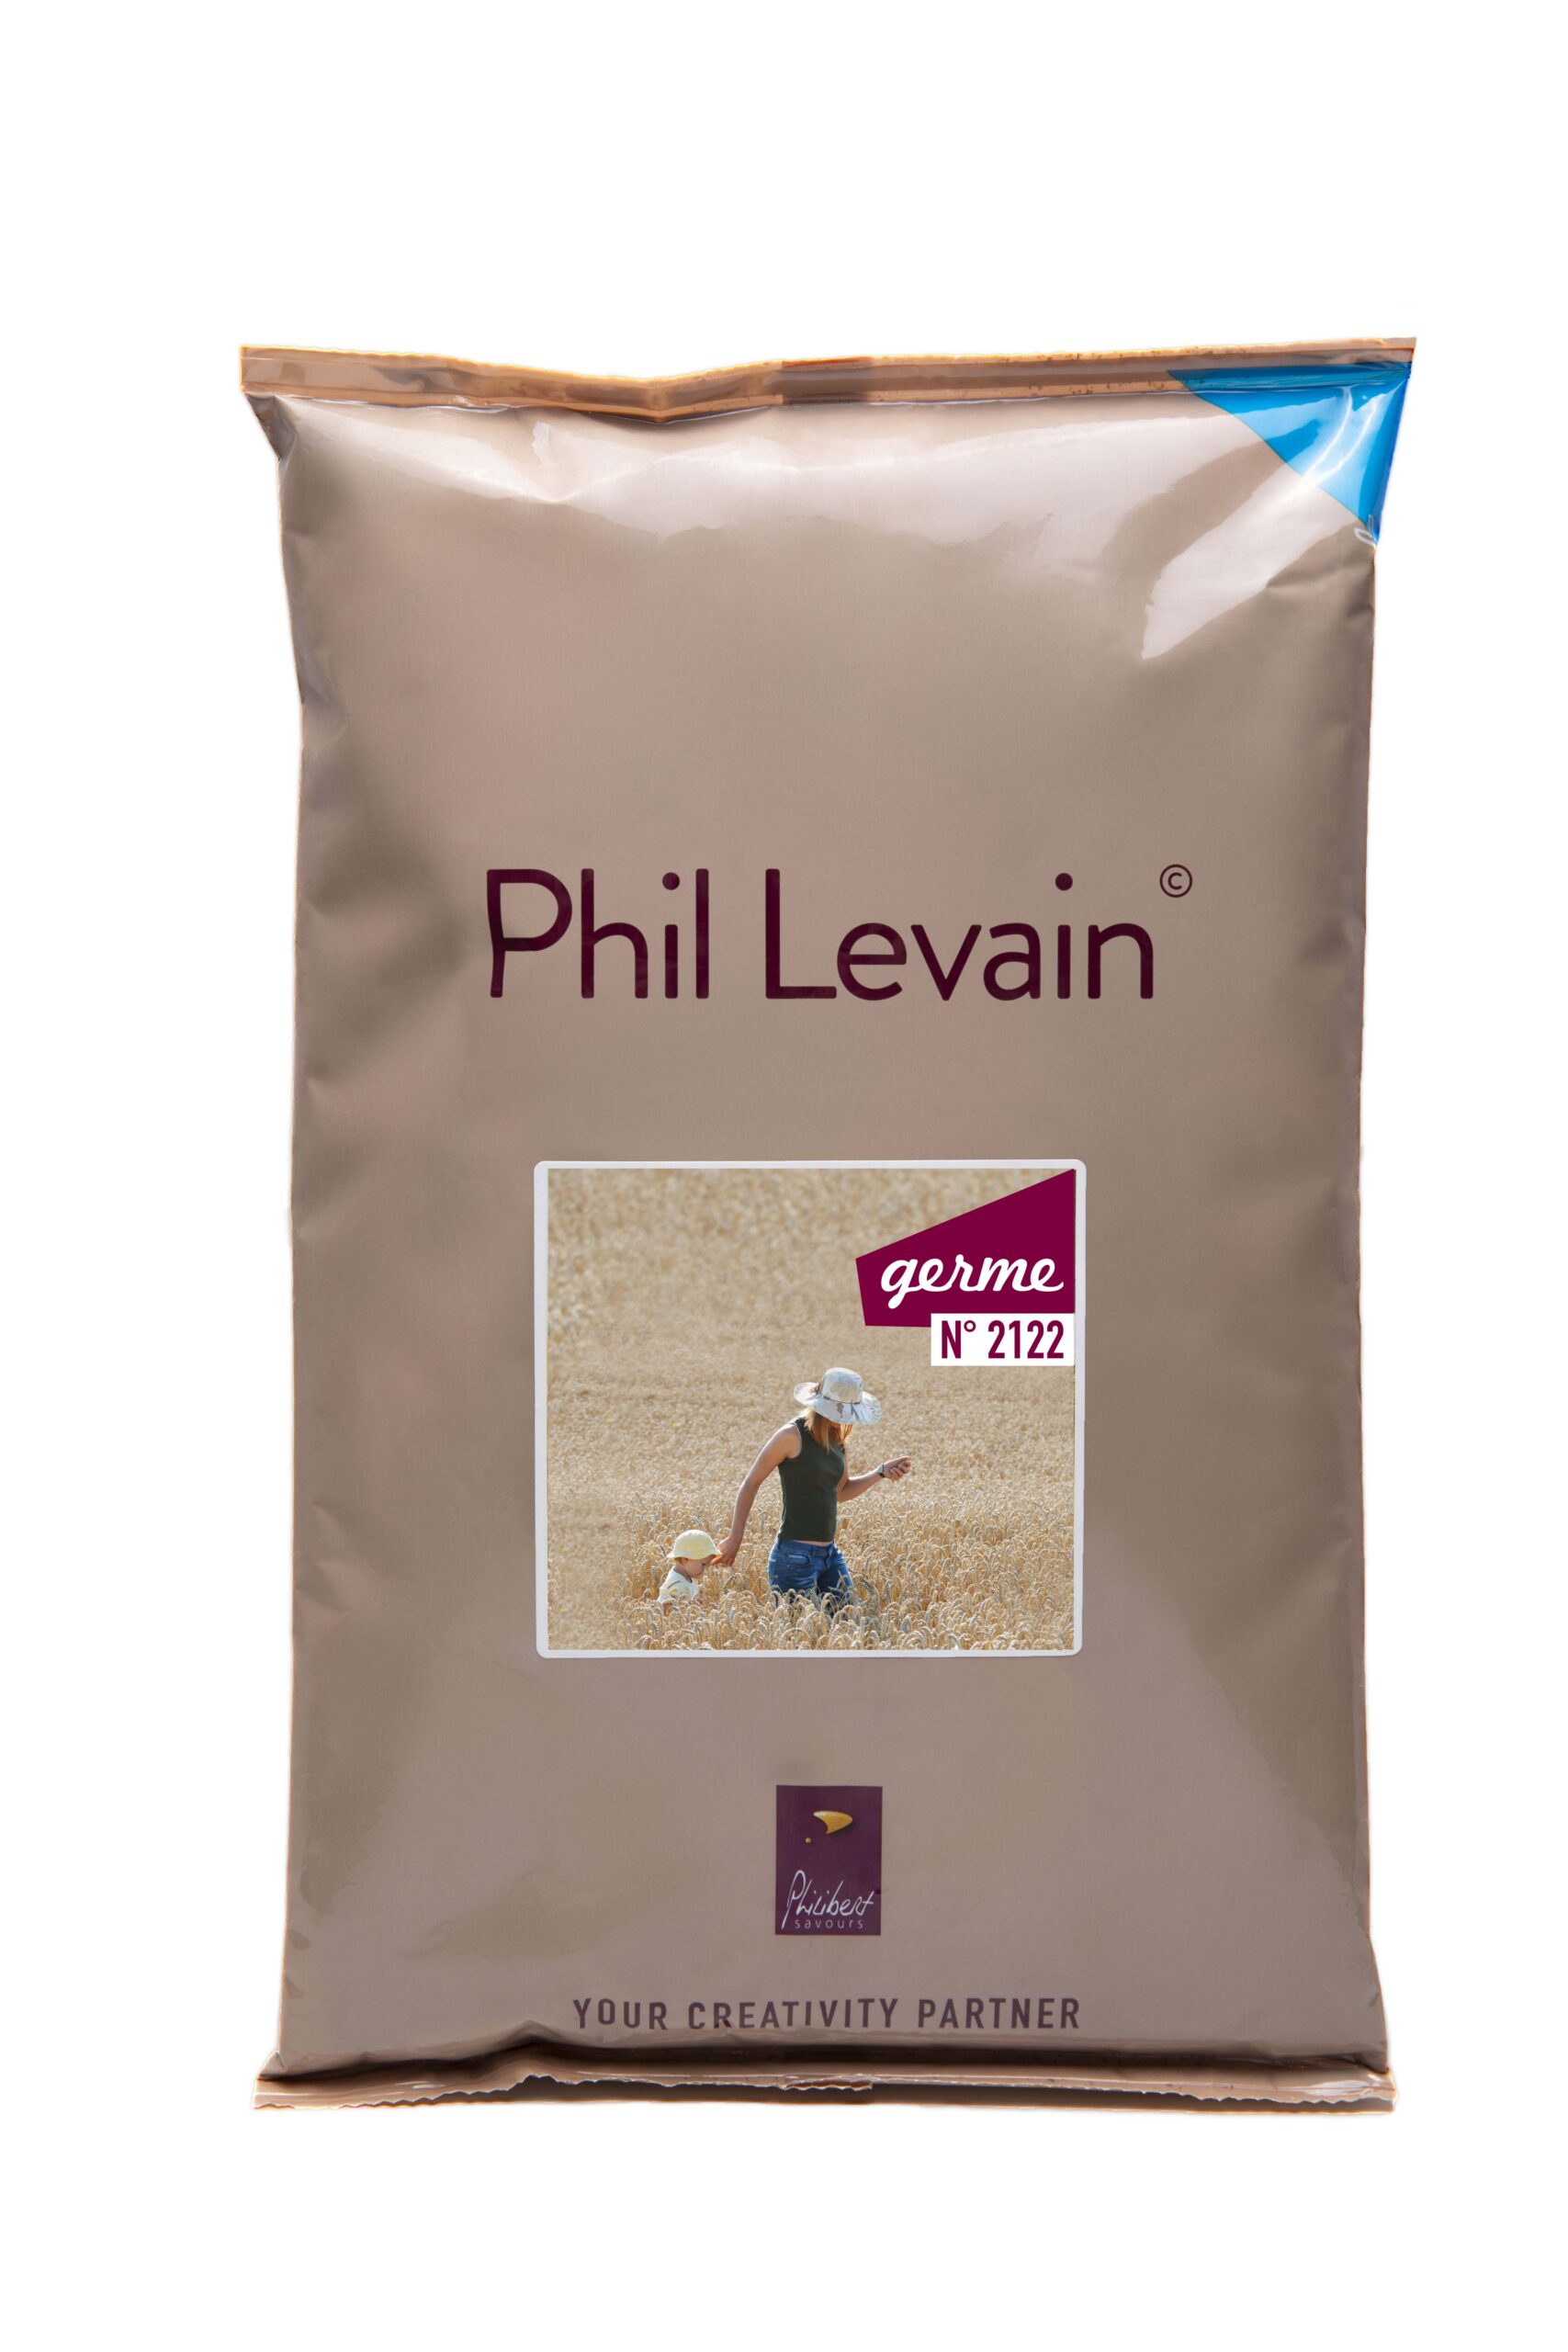 Phil Levain Germe, premier levain liquide produit à partir de germe